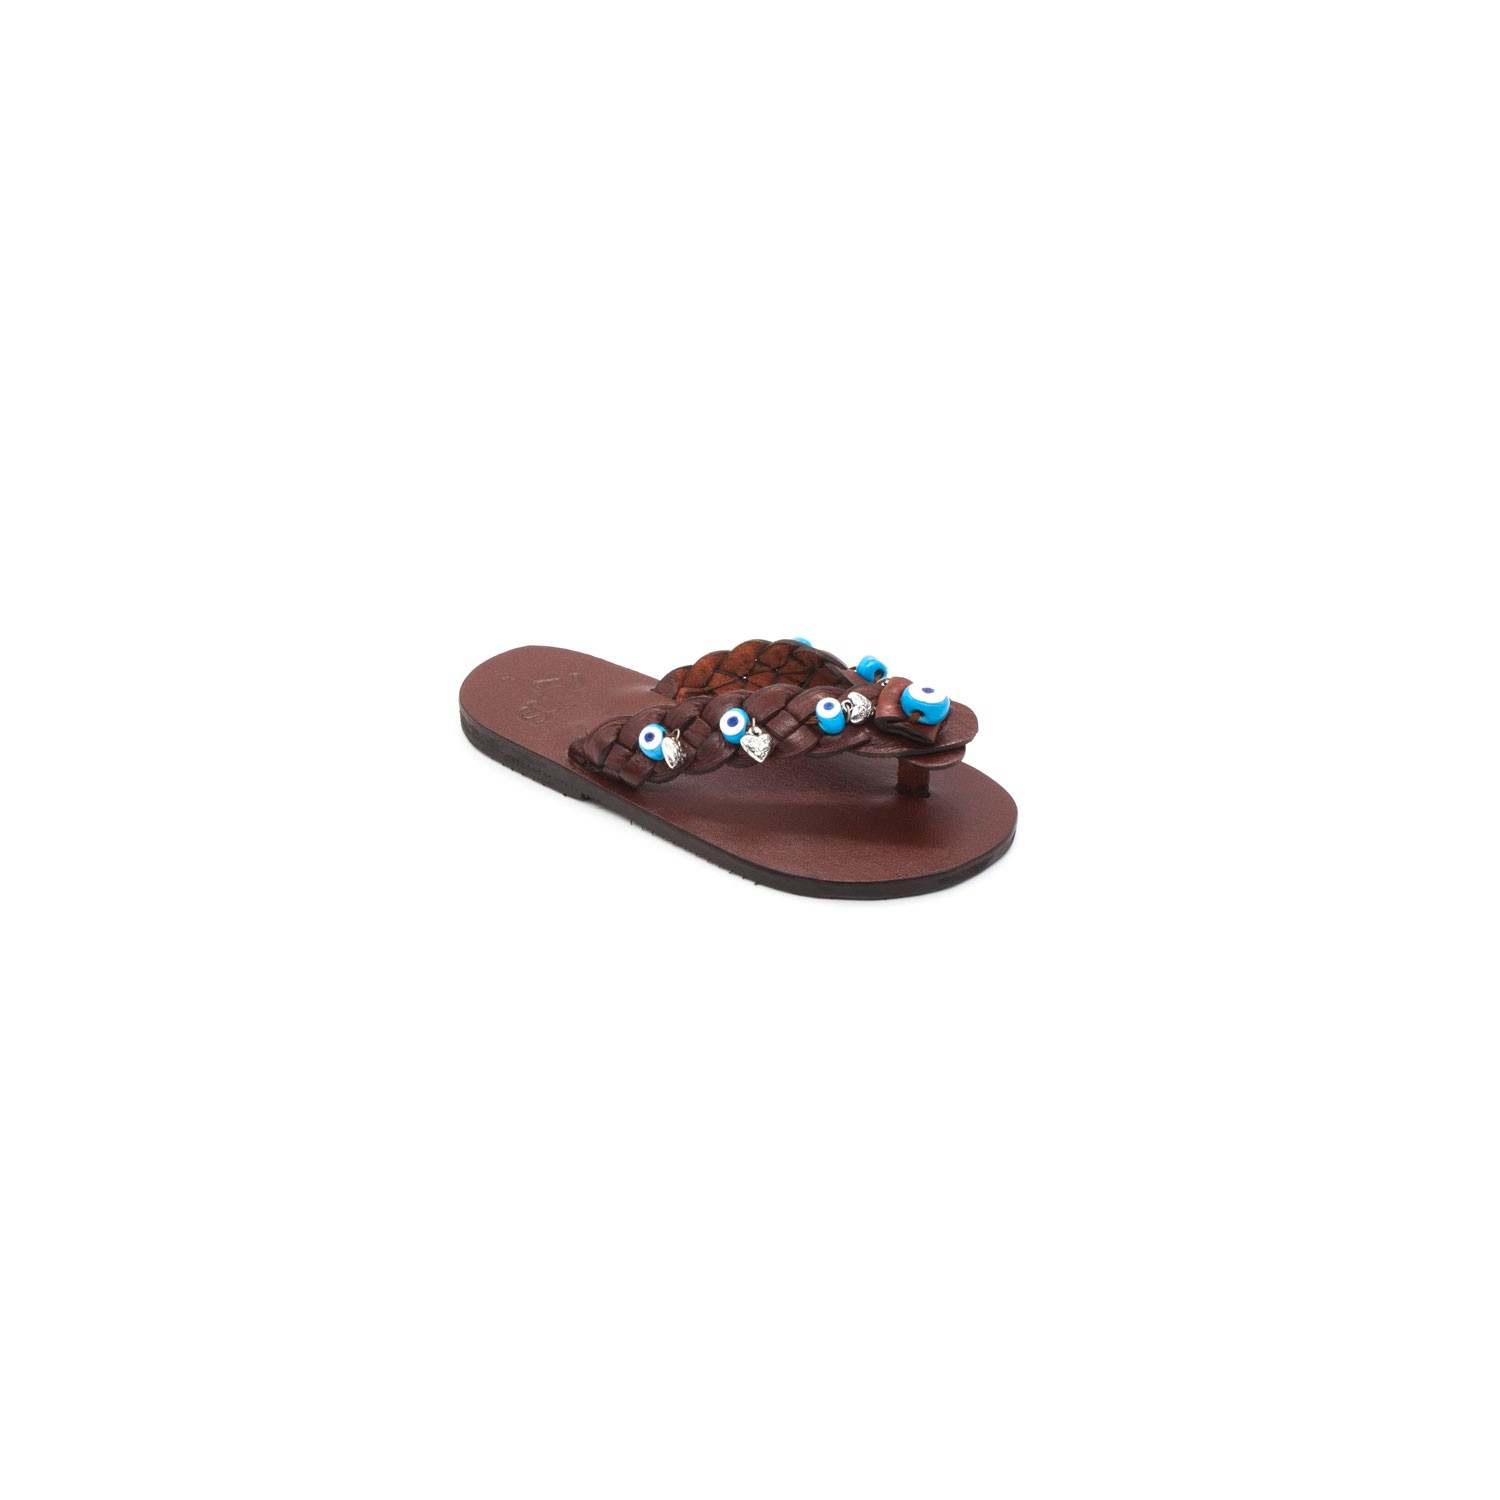 Sur Sandalet El Yapımı Deri Kız Çocuk Bodrum Parmak Arası Terlik - Mavi